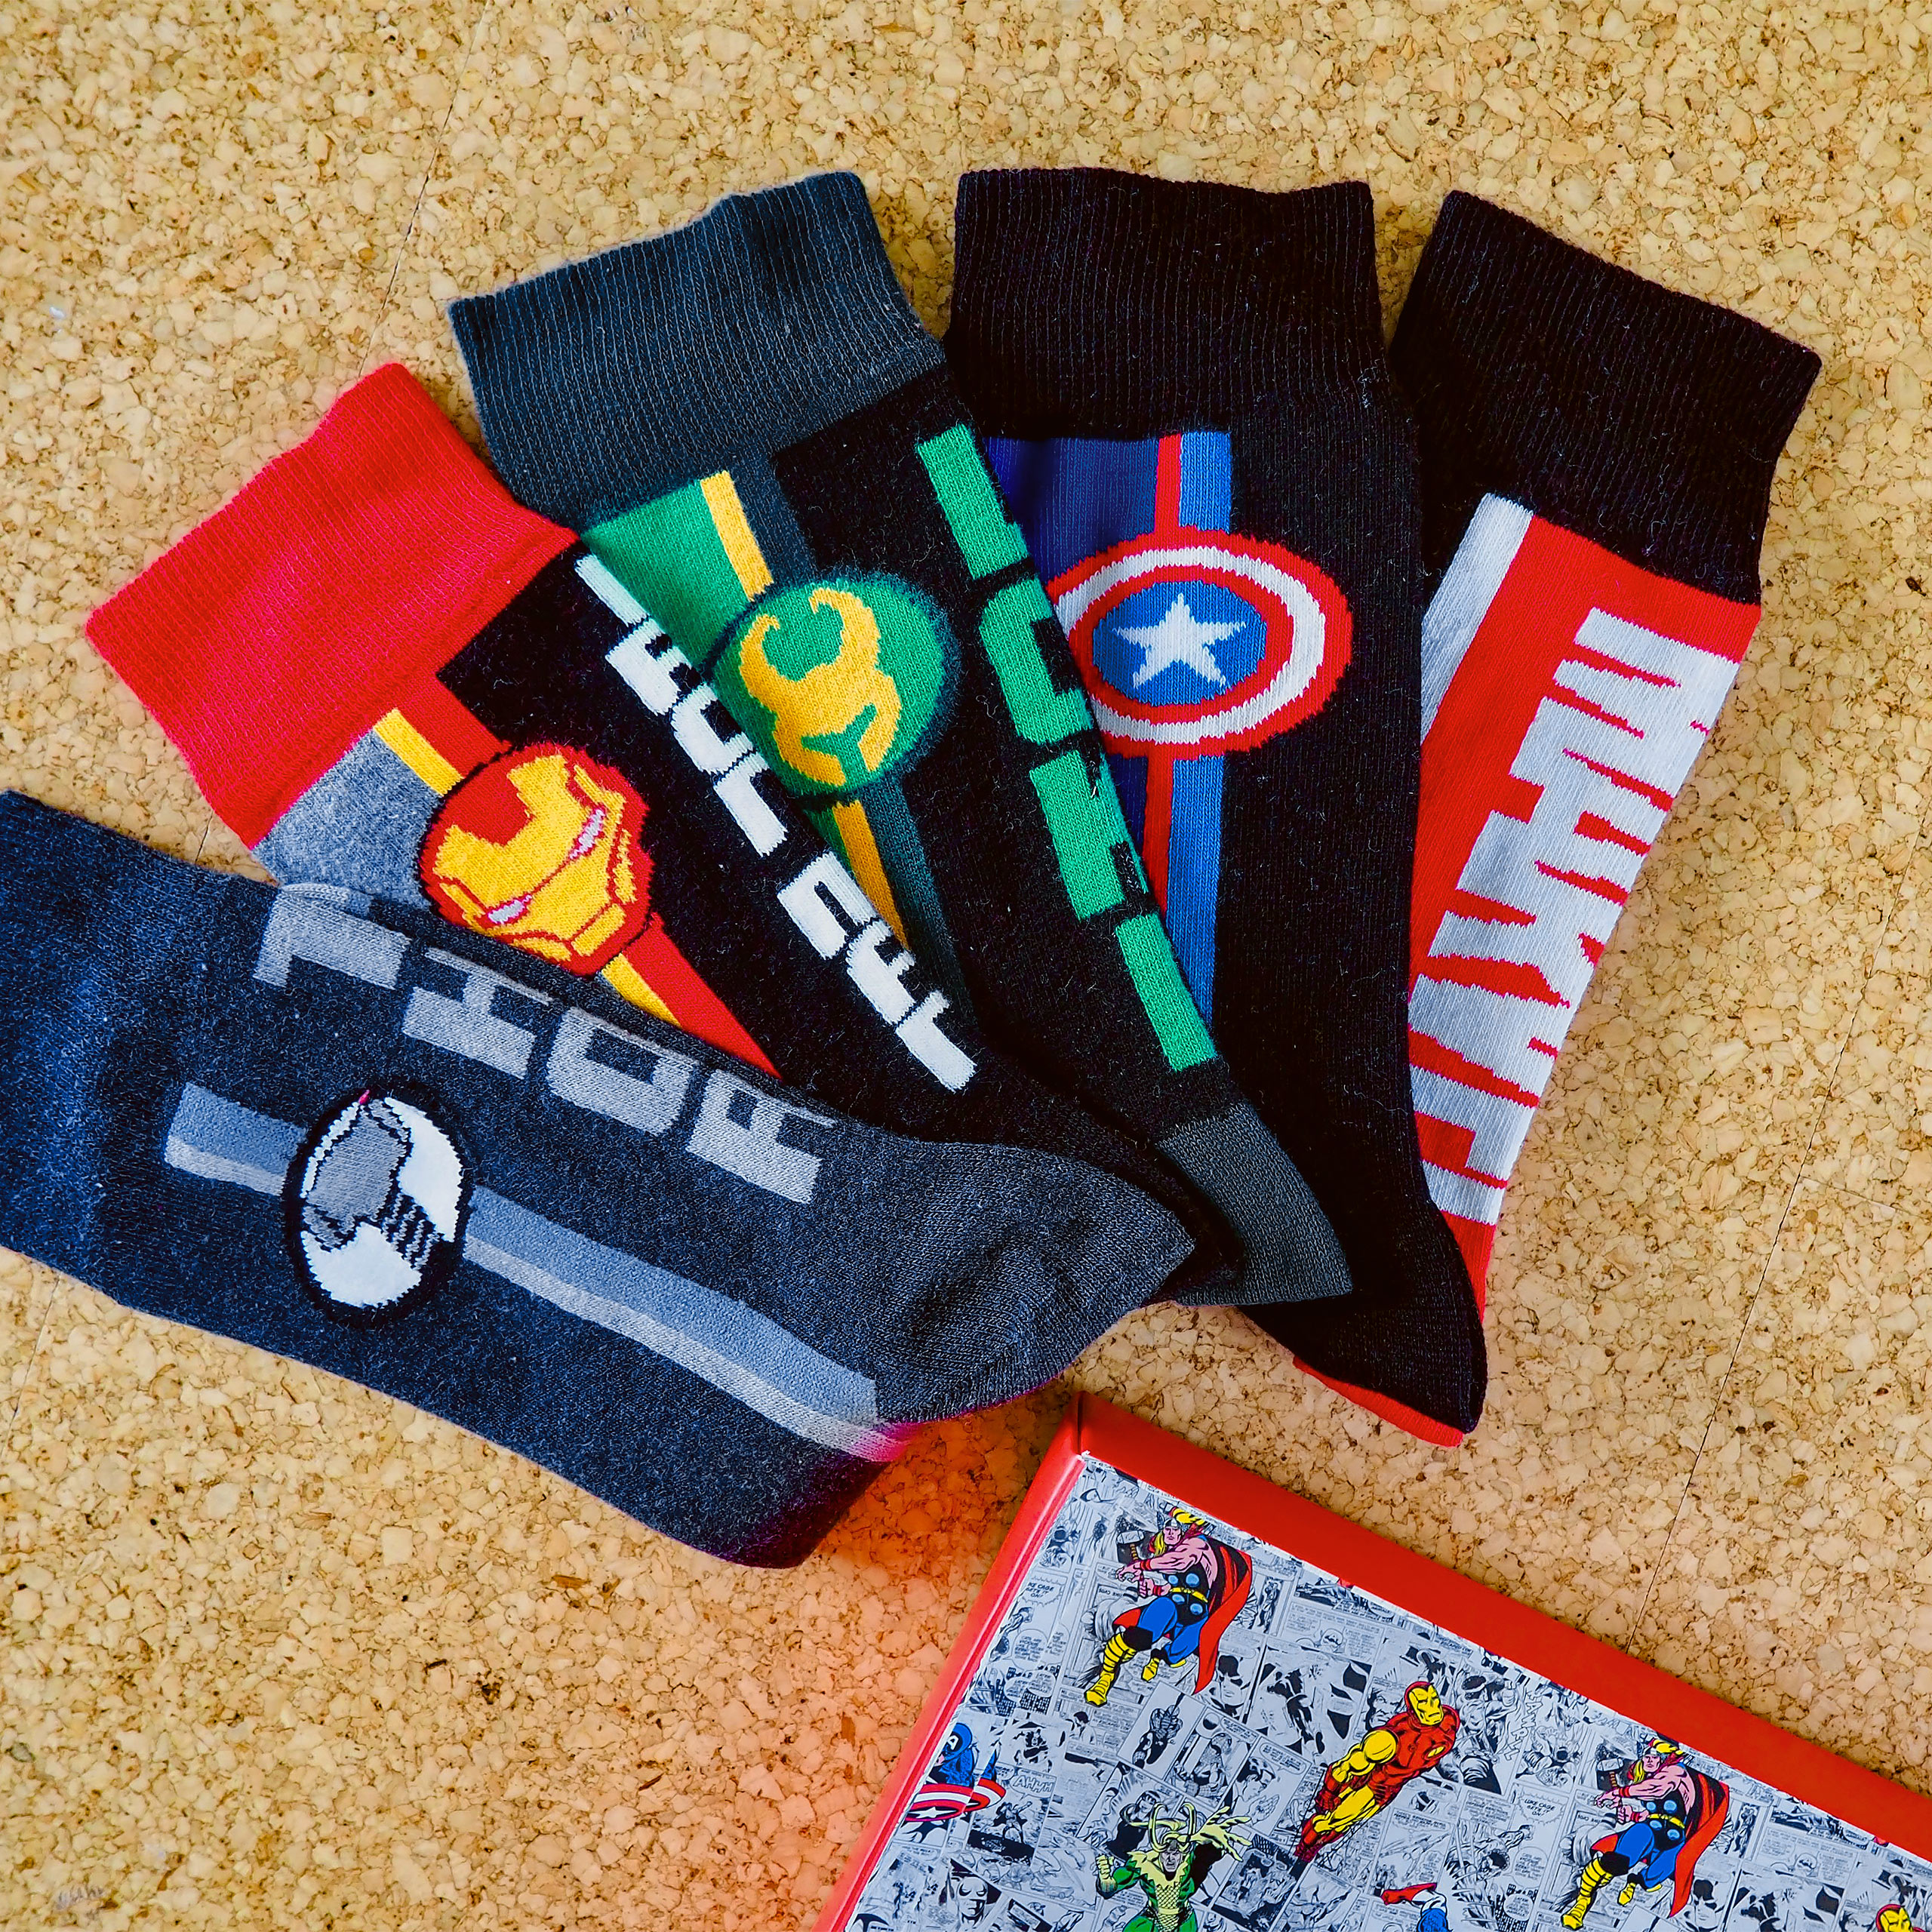 Marvel Avengers Socks 5 Set